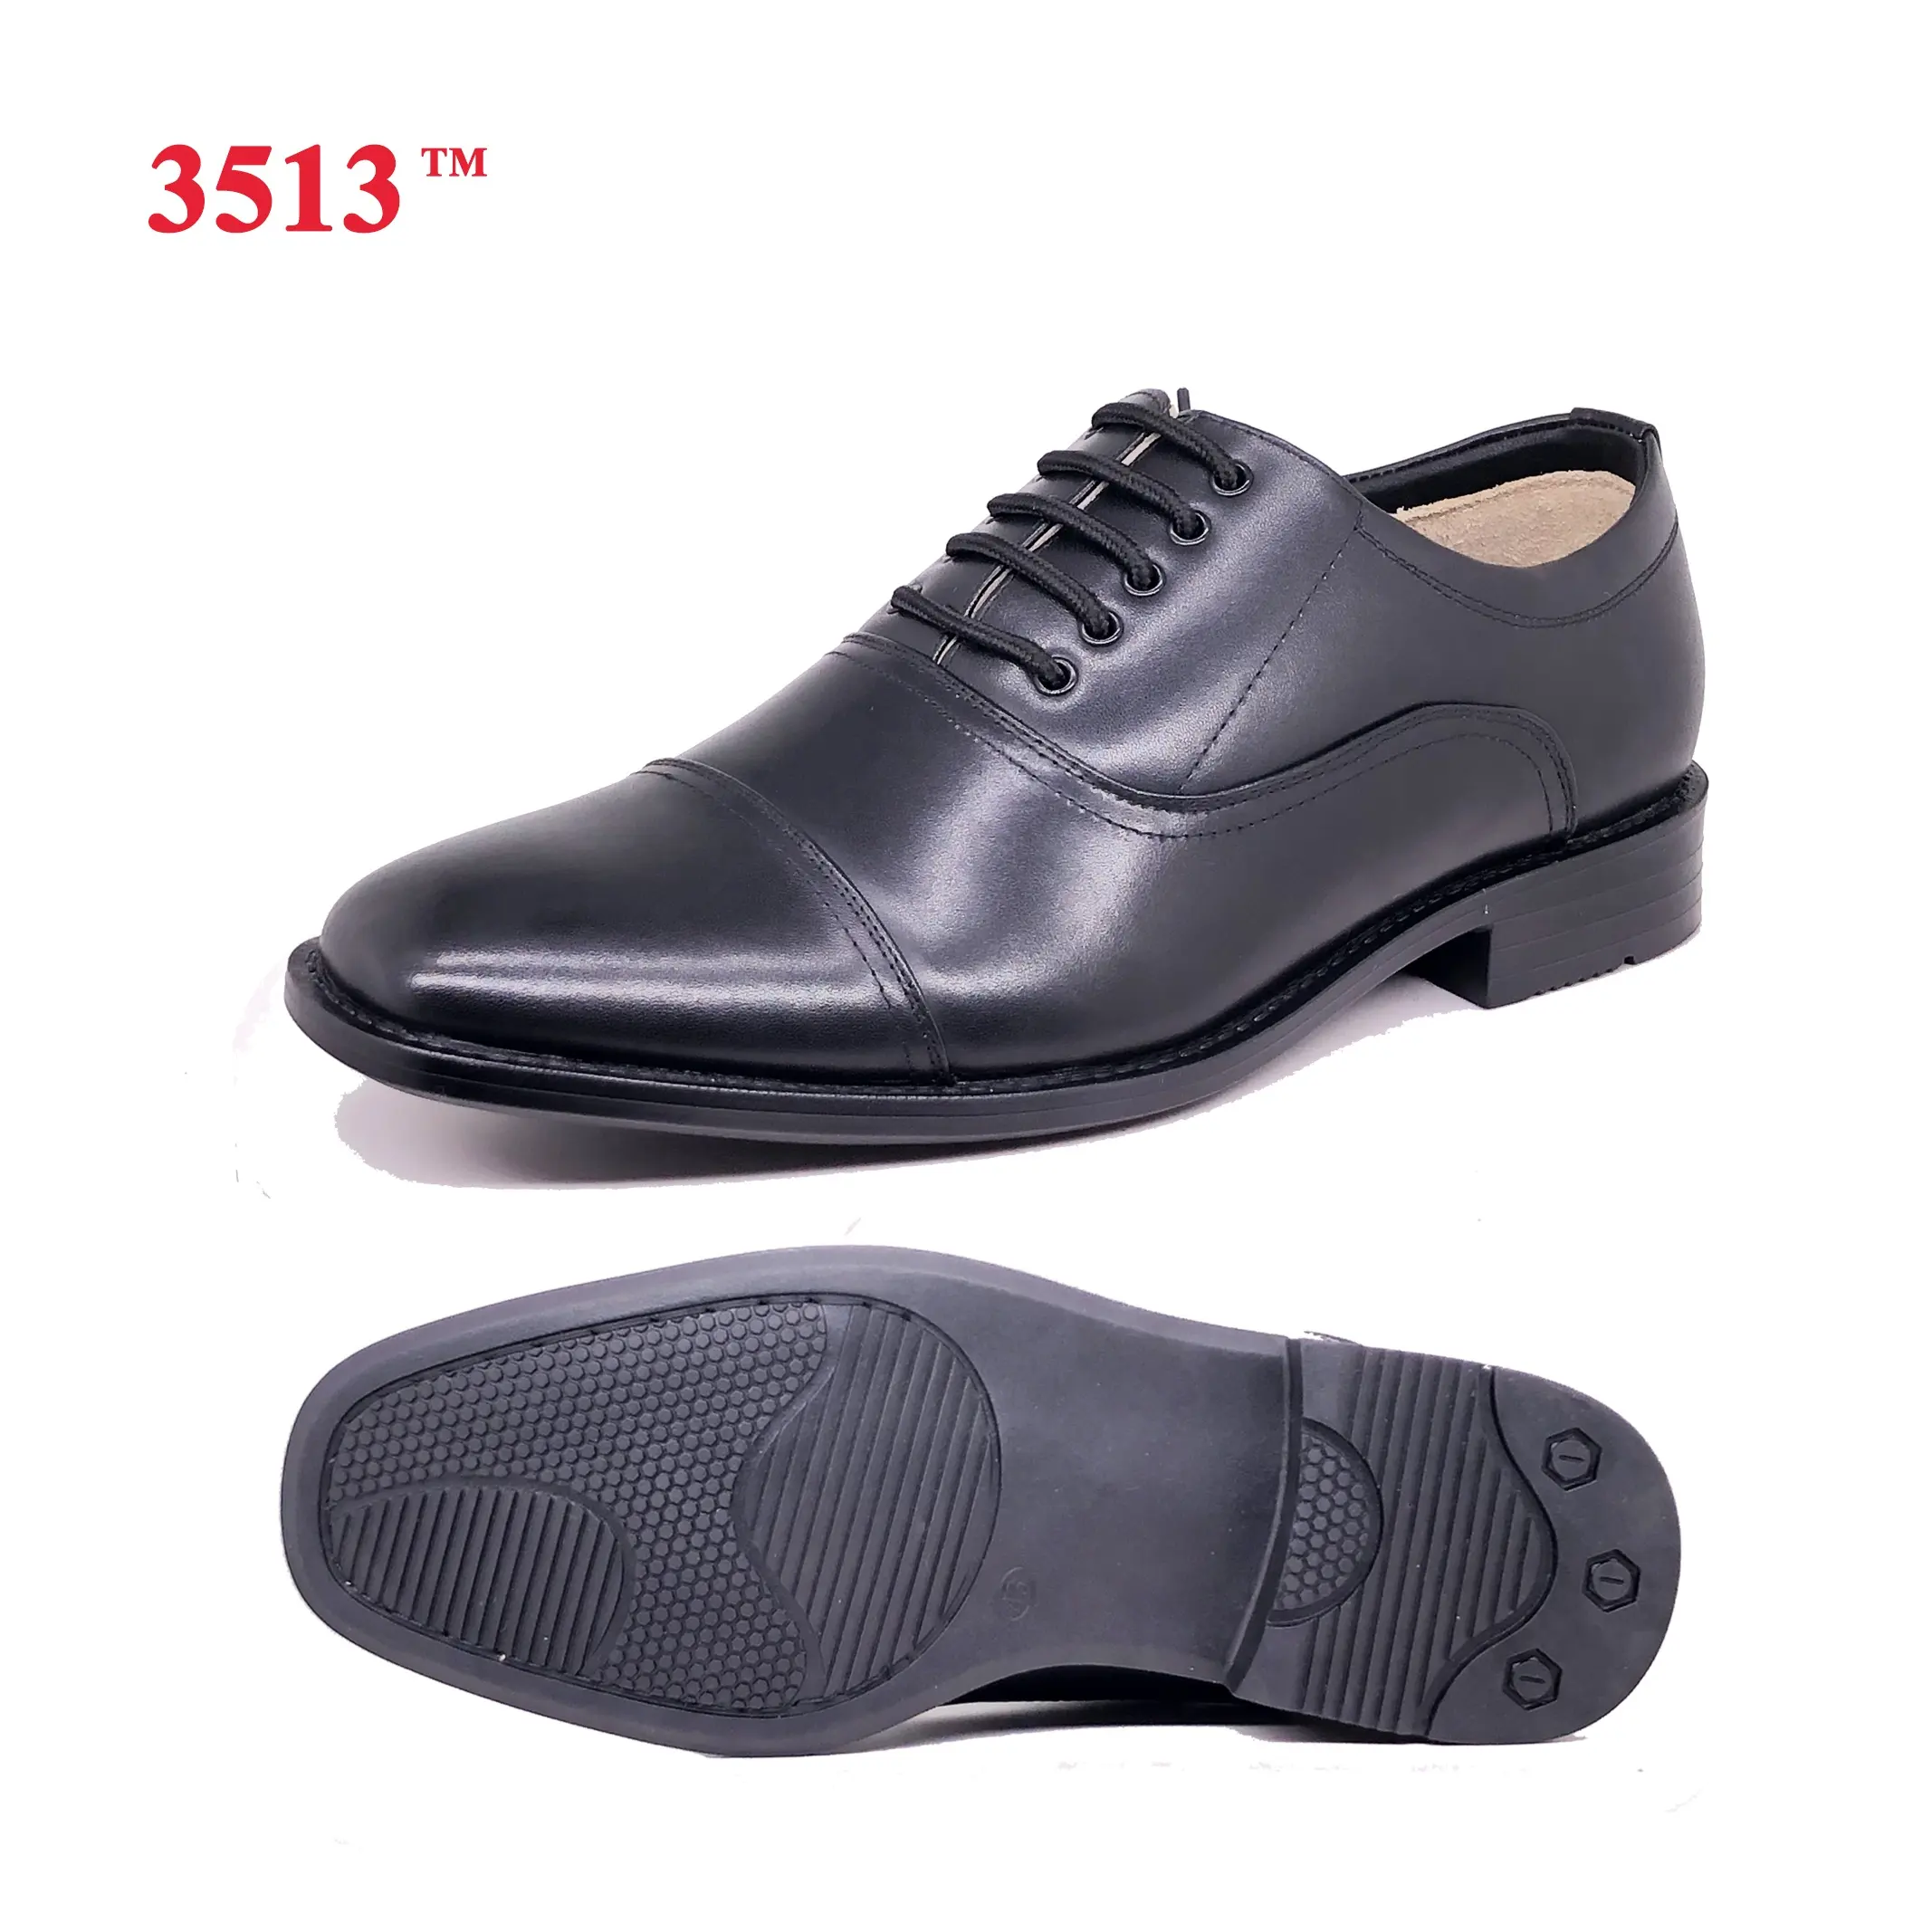 Zapatos planos de vestir Oxford para hombre, calzado formal de cuero genuino, color negro, con cordones